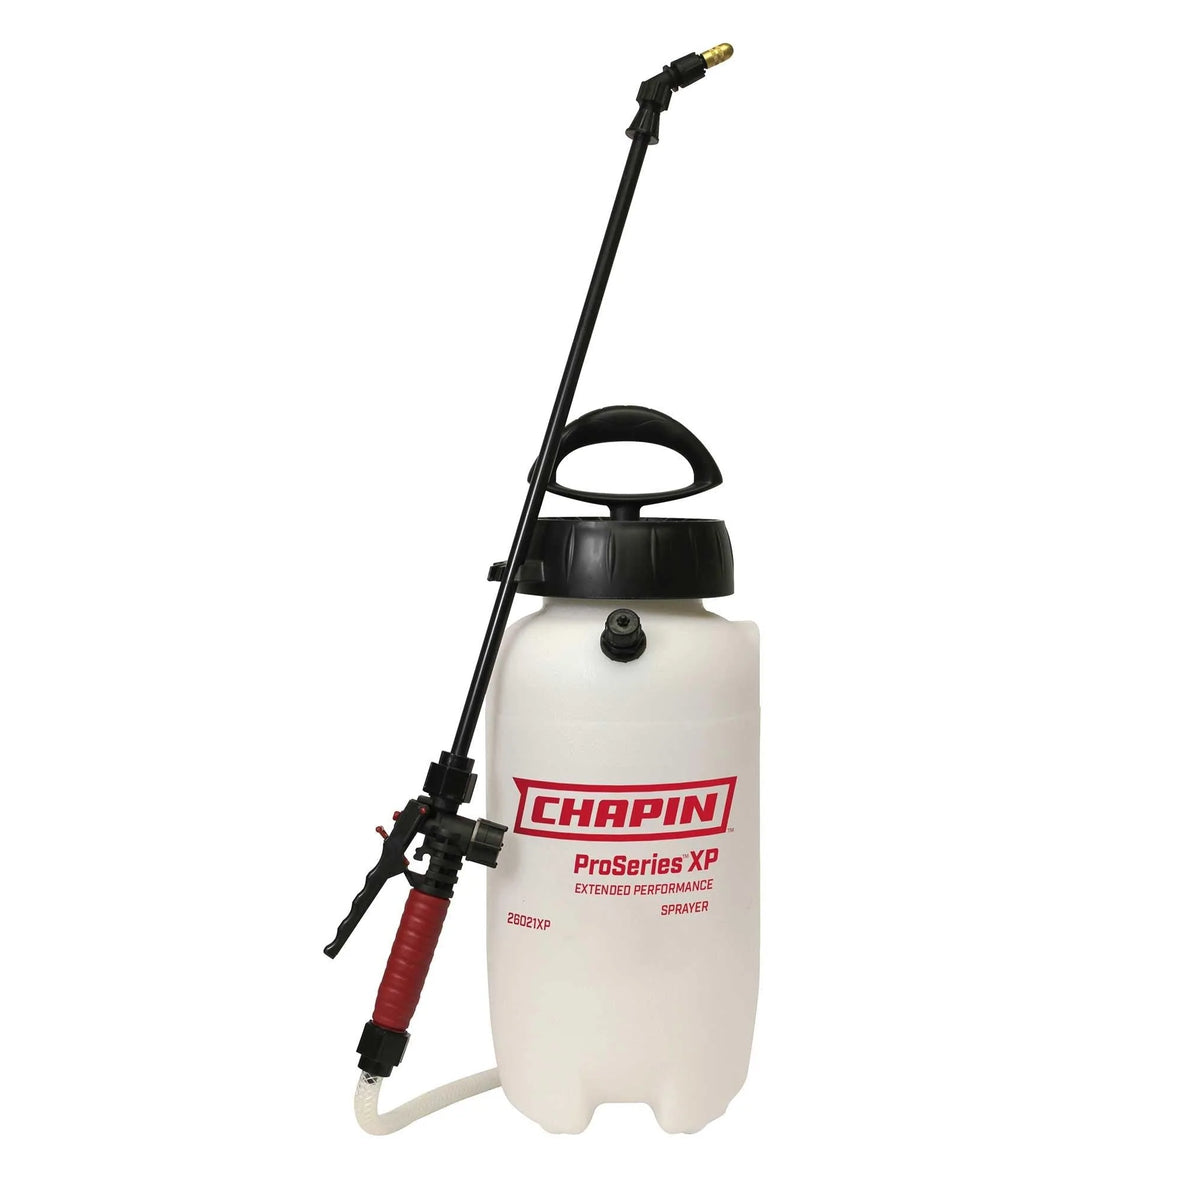 2 Gallon Multi-Purpose Lawn and Garden Pump Sprayer